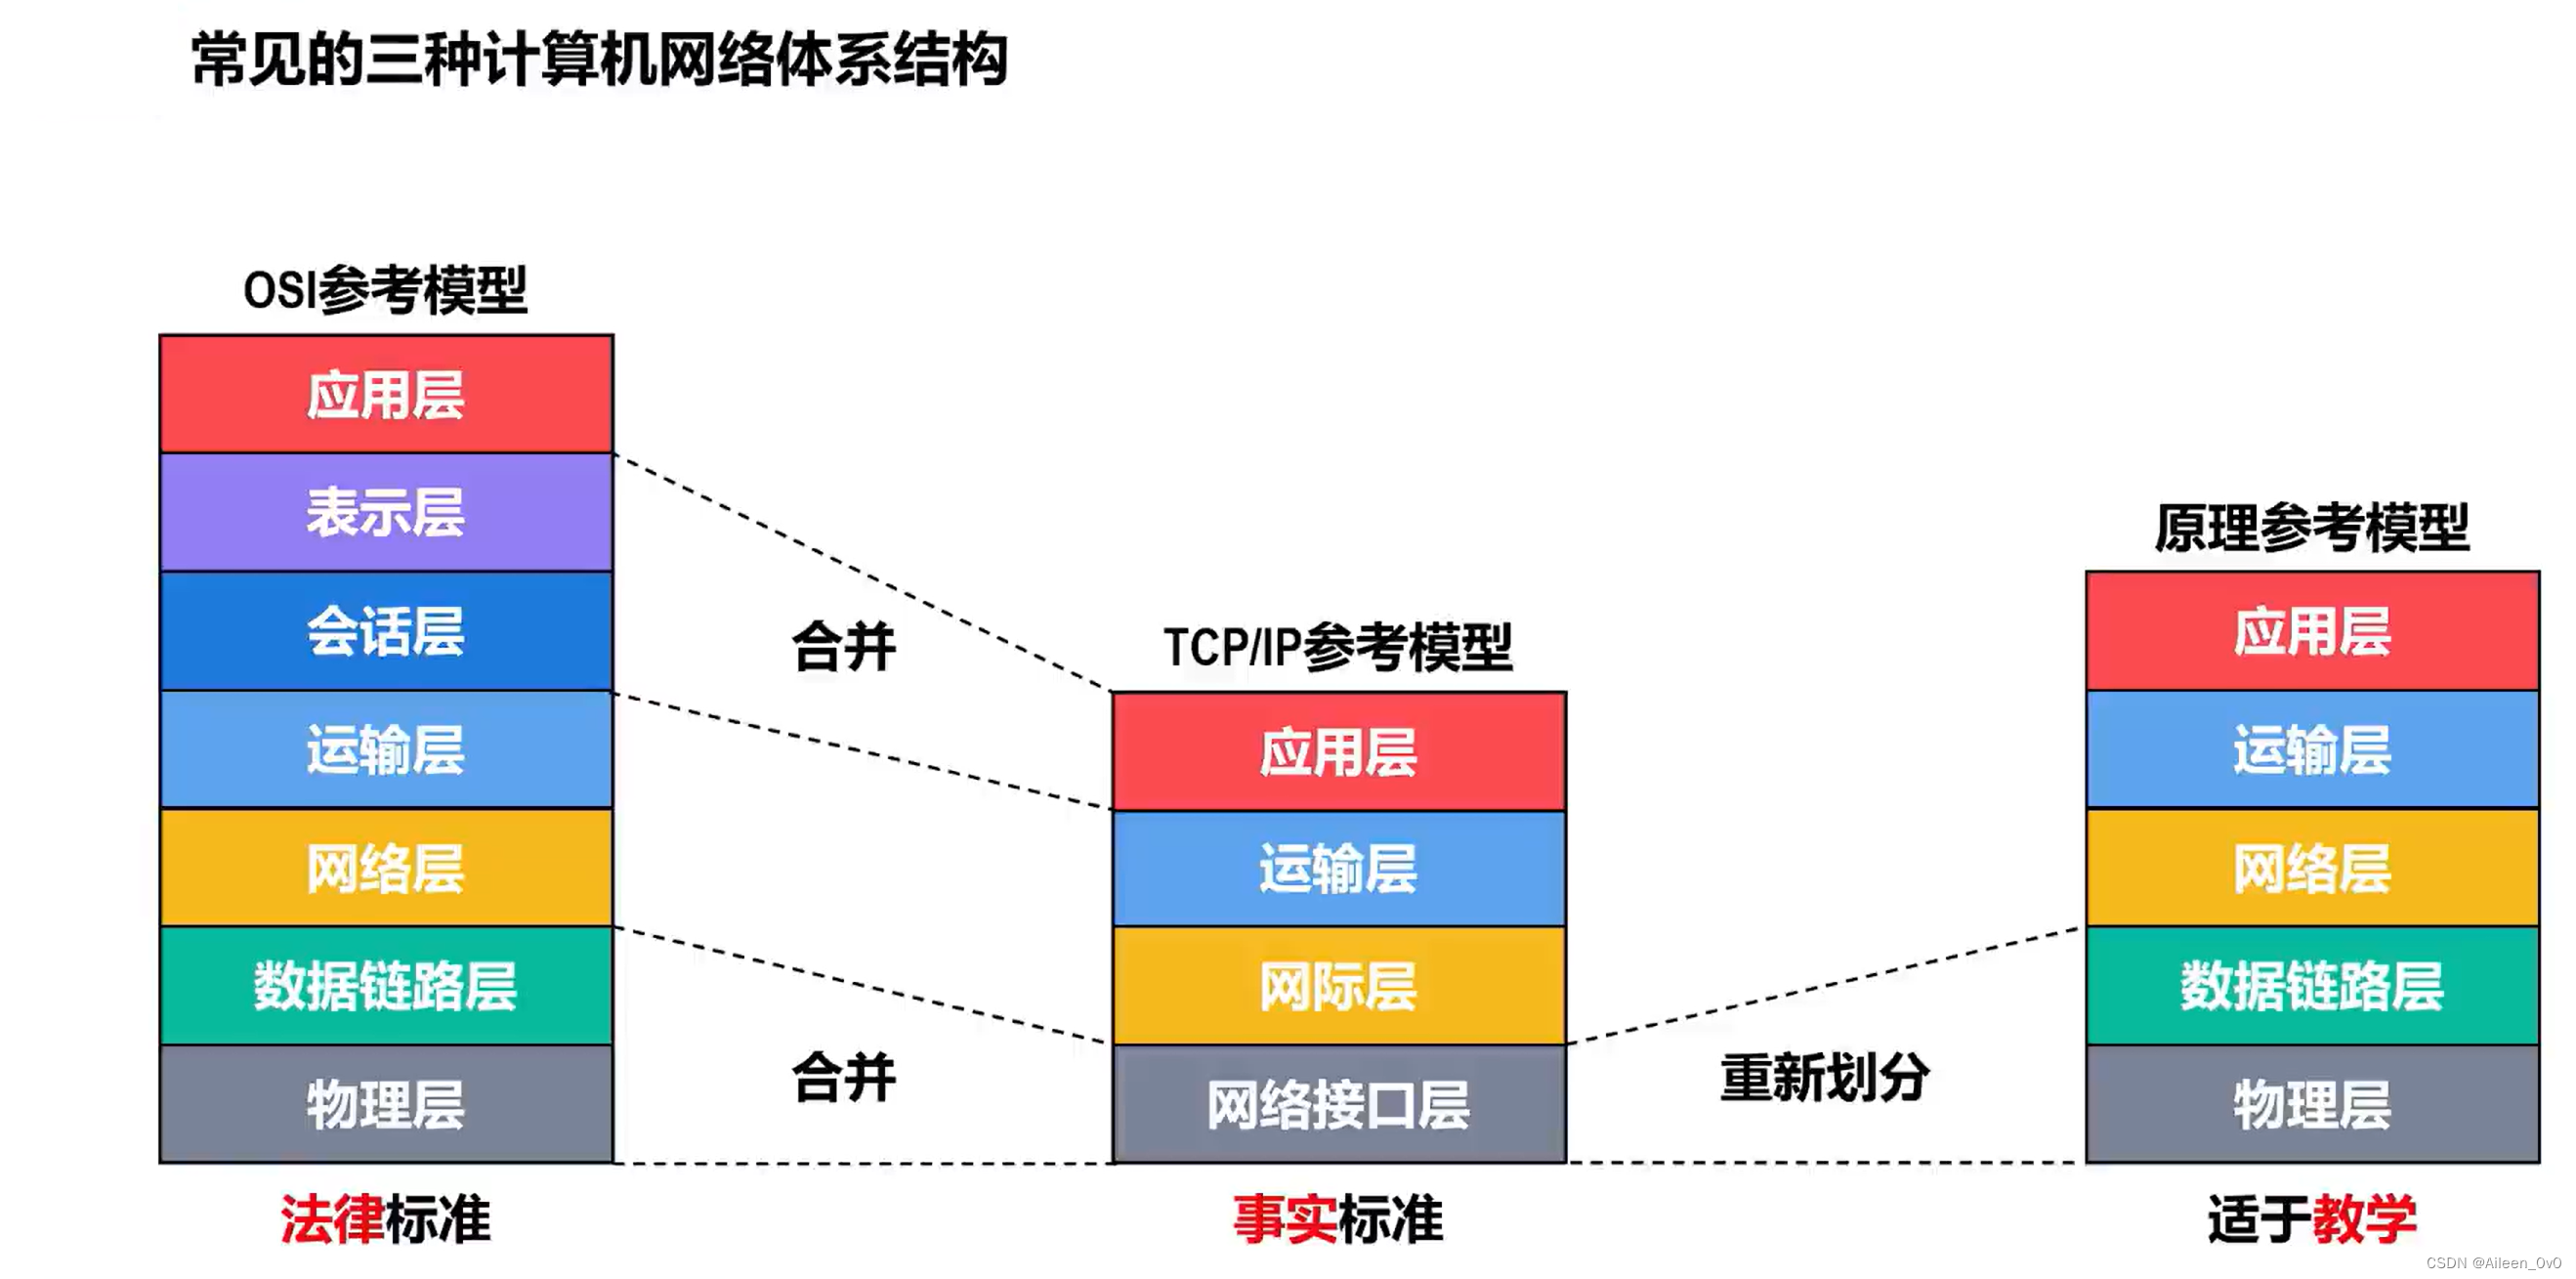 【网络奇缘】- 计算机网络|分层结构|深入探索TCP/IP模型|5层参考模型